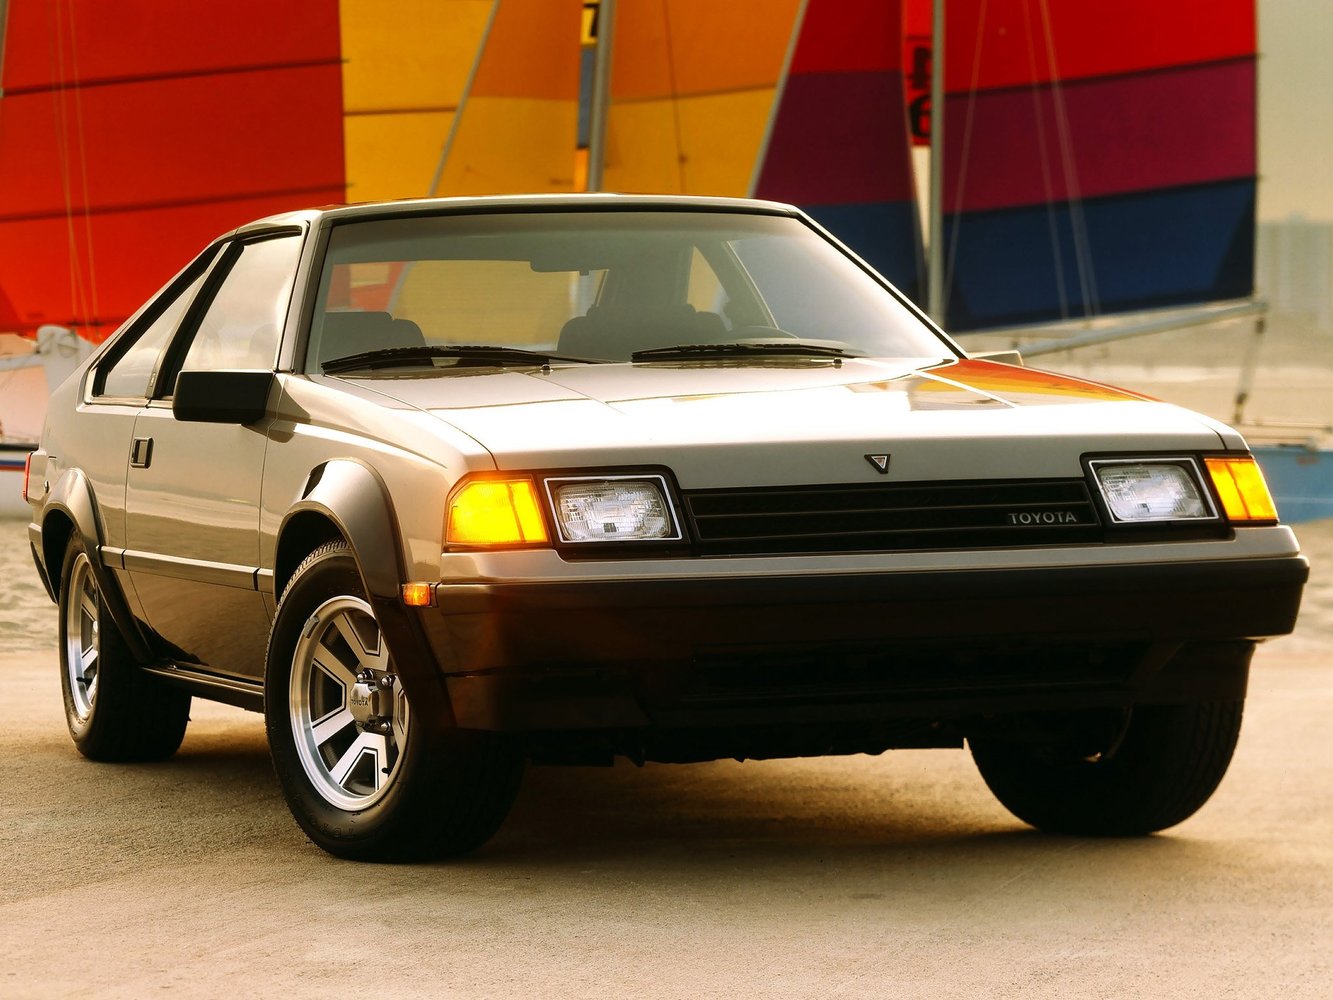 хэтчбек 3 дв. Toyota Celica 1982 - 1986г выпуска модификация 1.6 AT (120 л.с.)